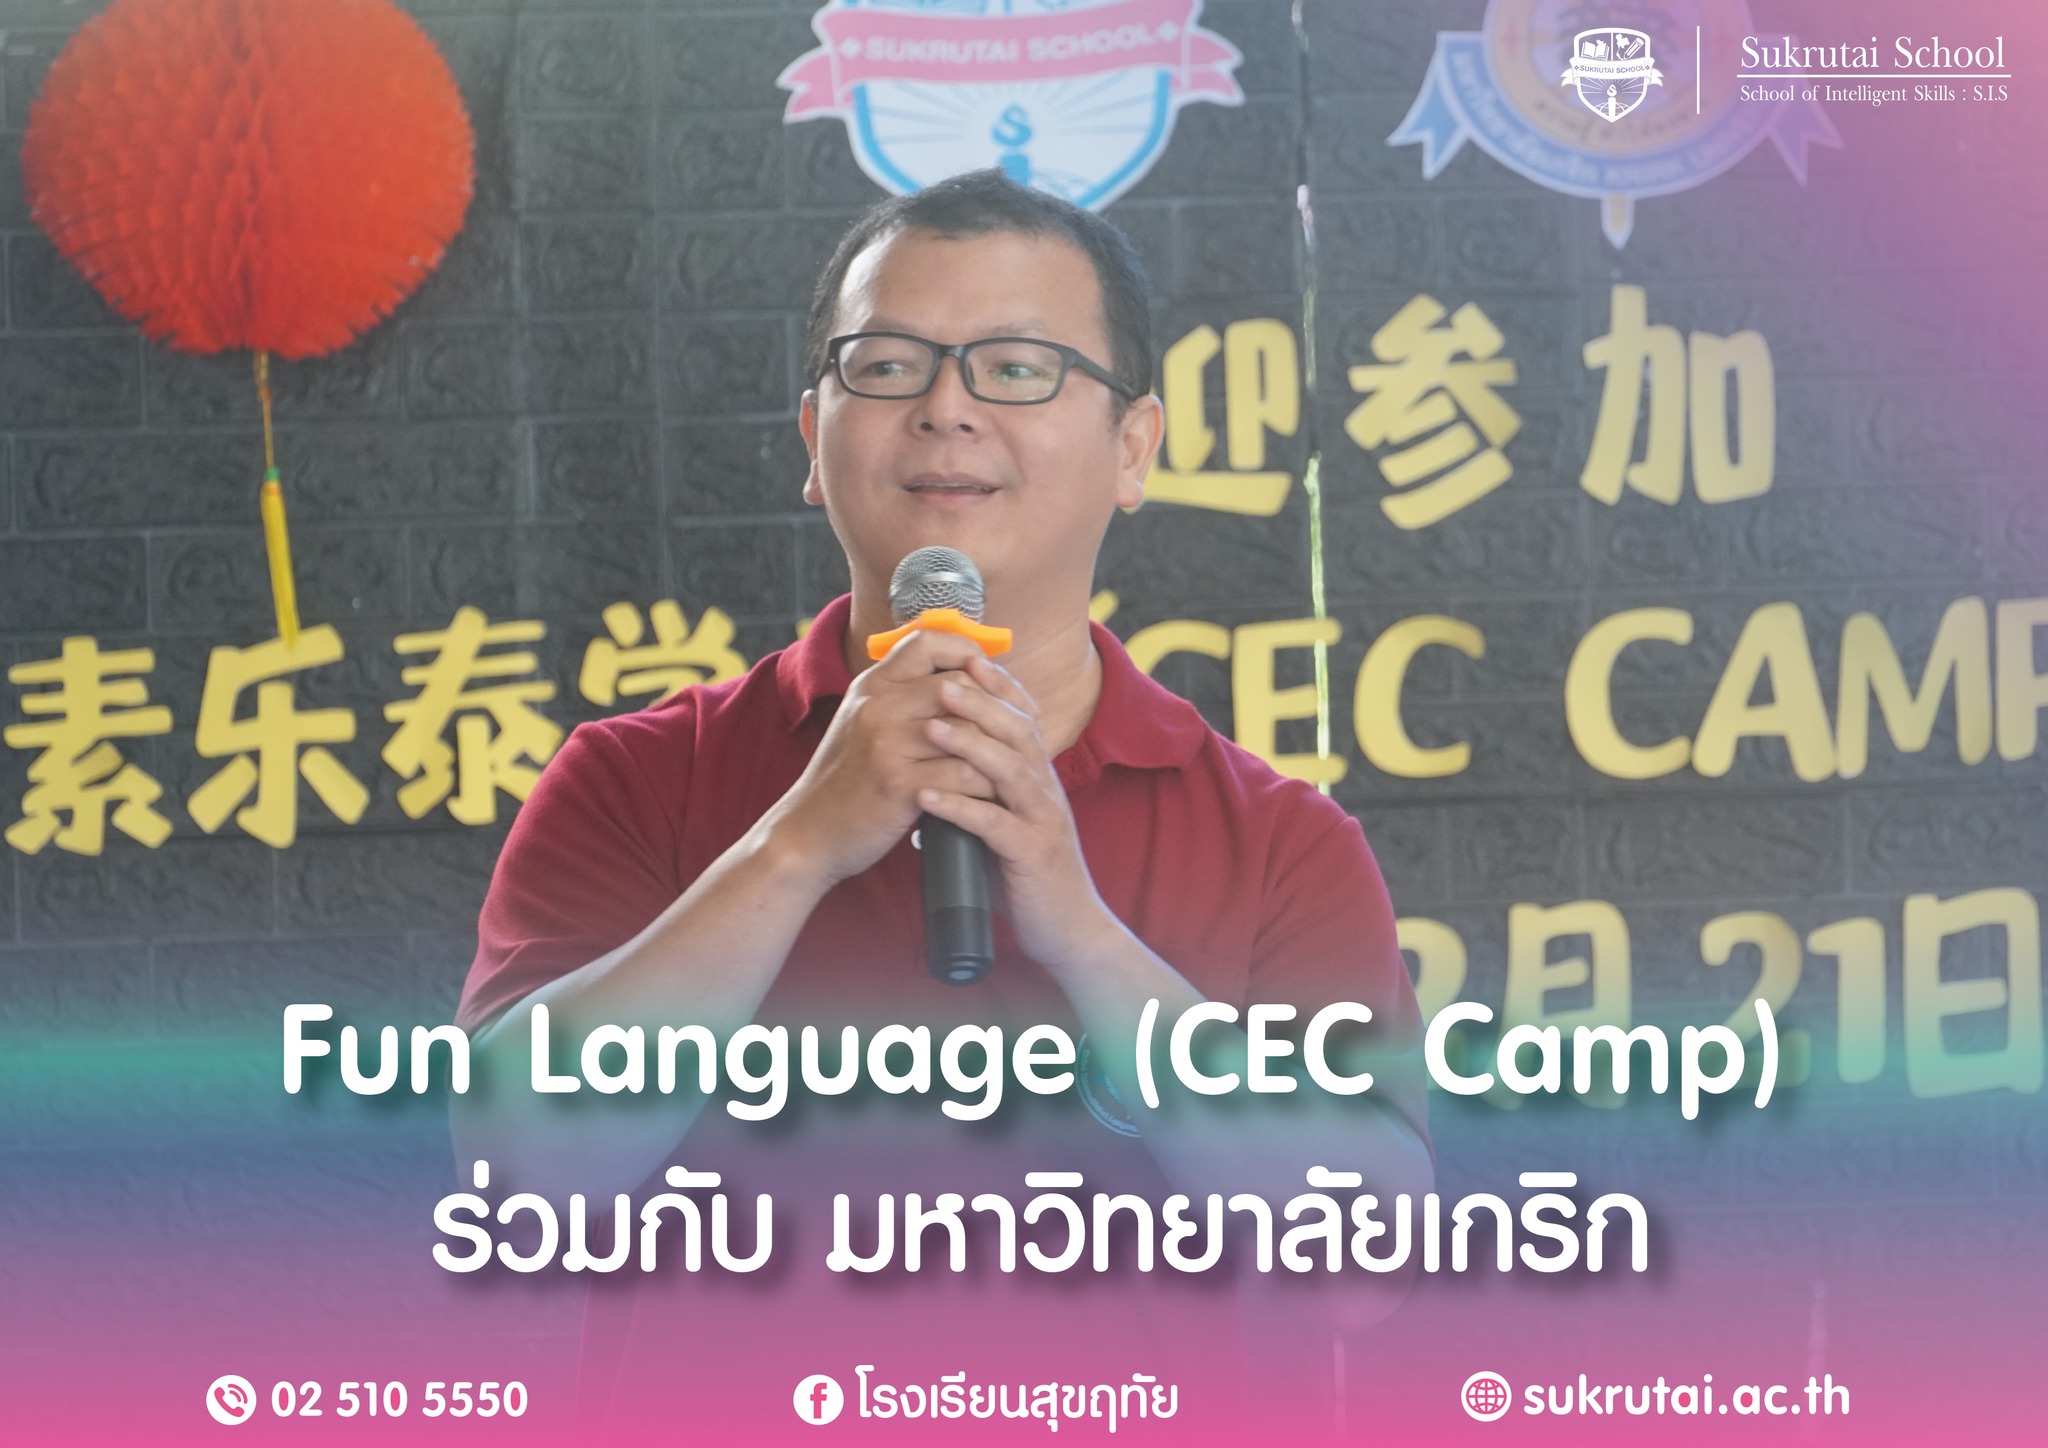 กิจกรรม Fun Language (CEC Camp)